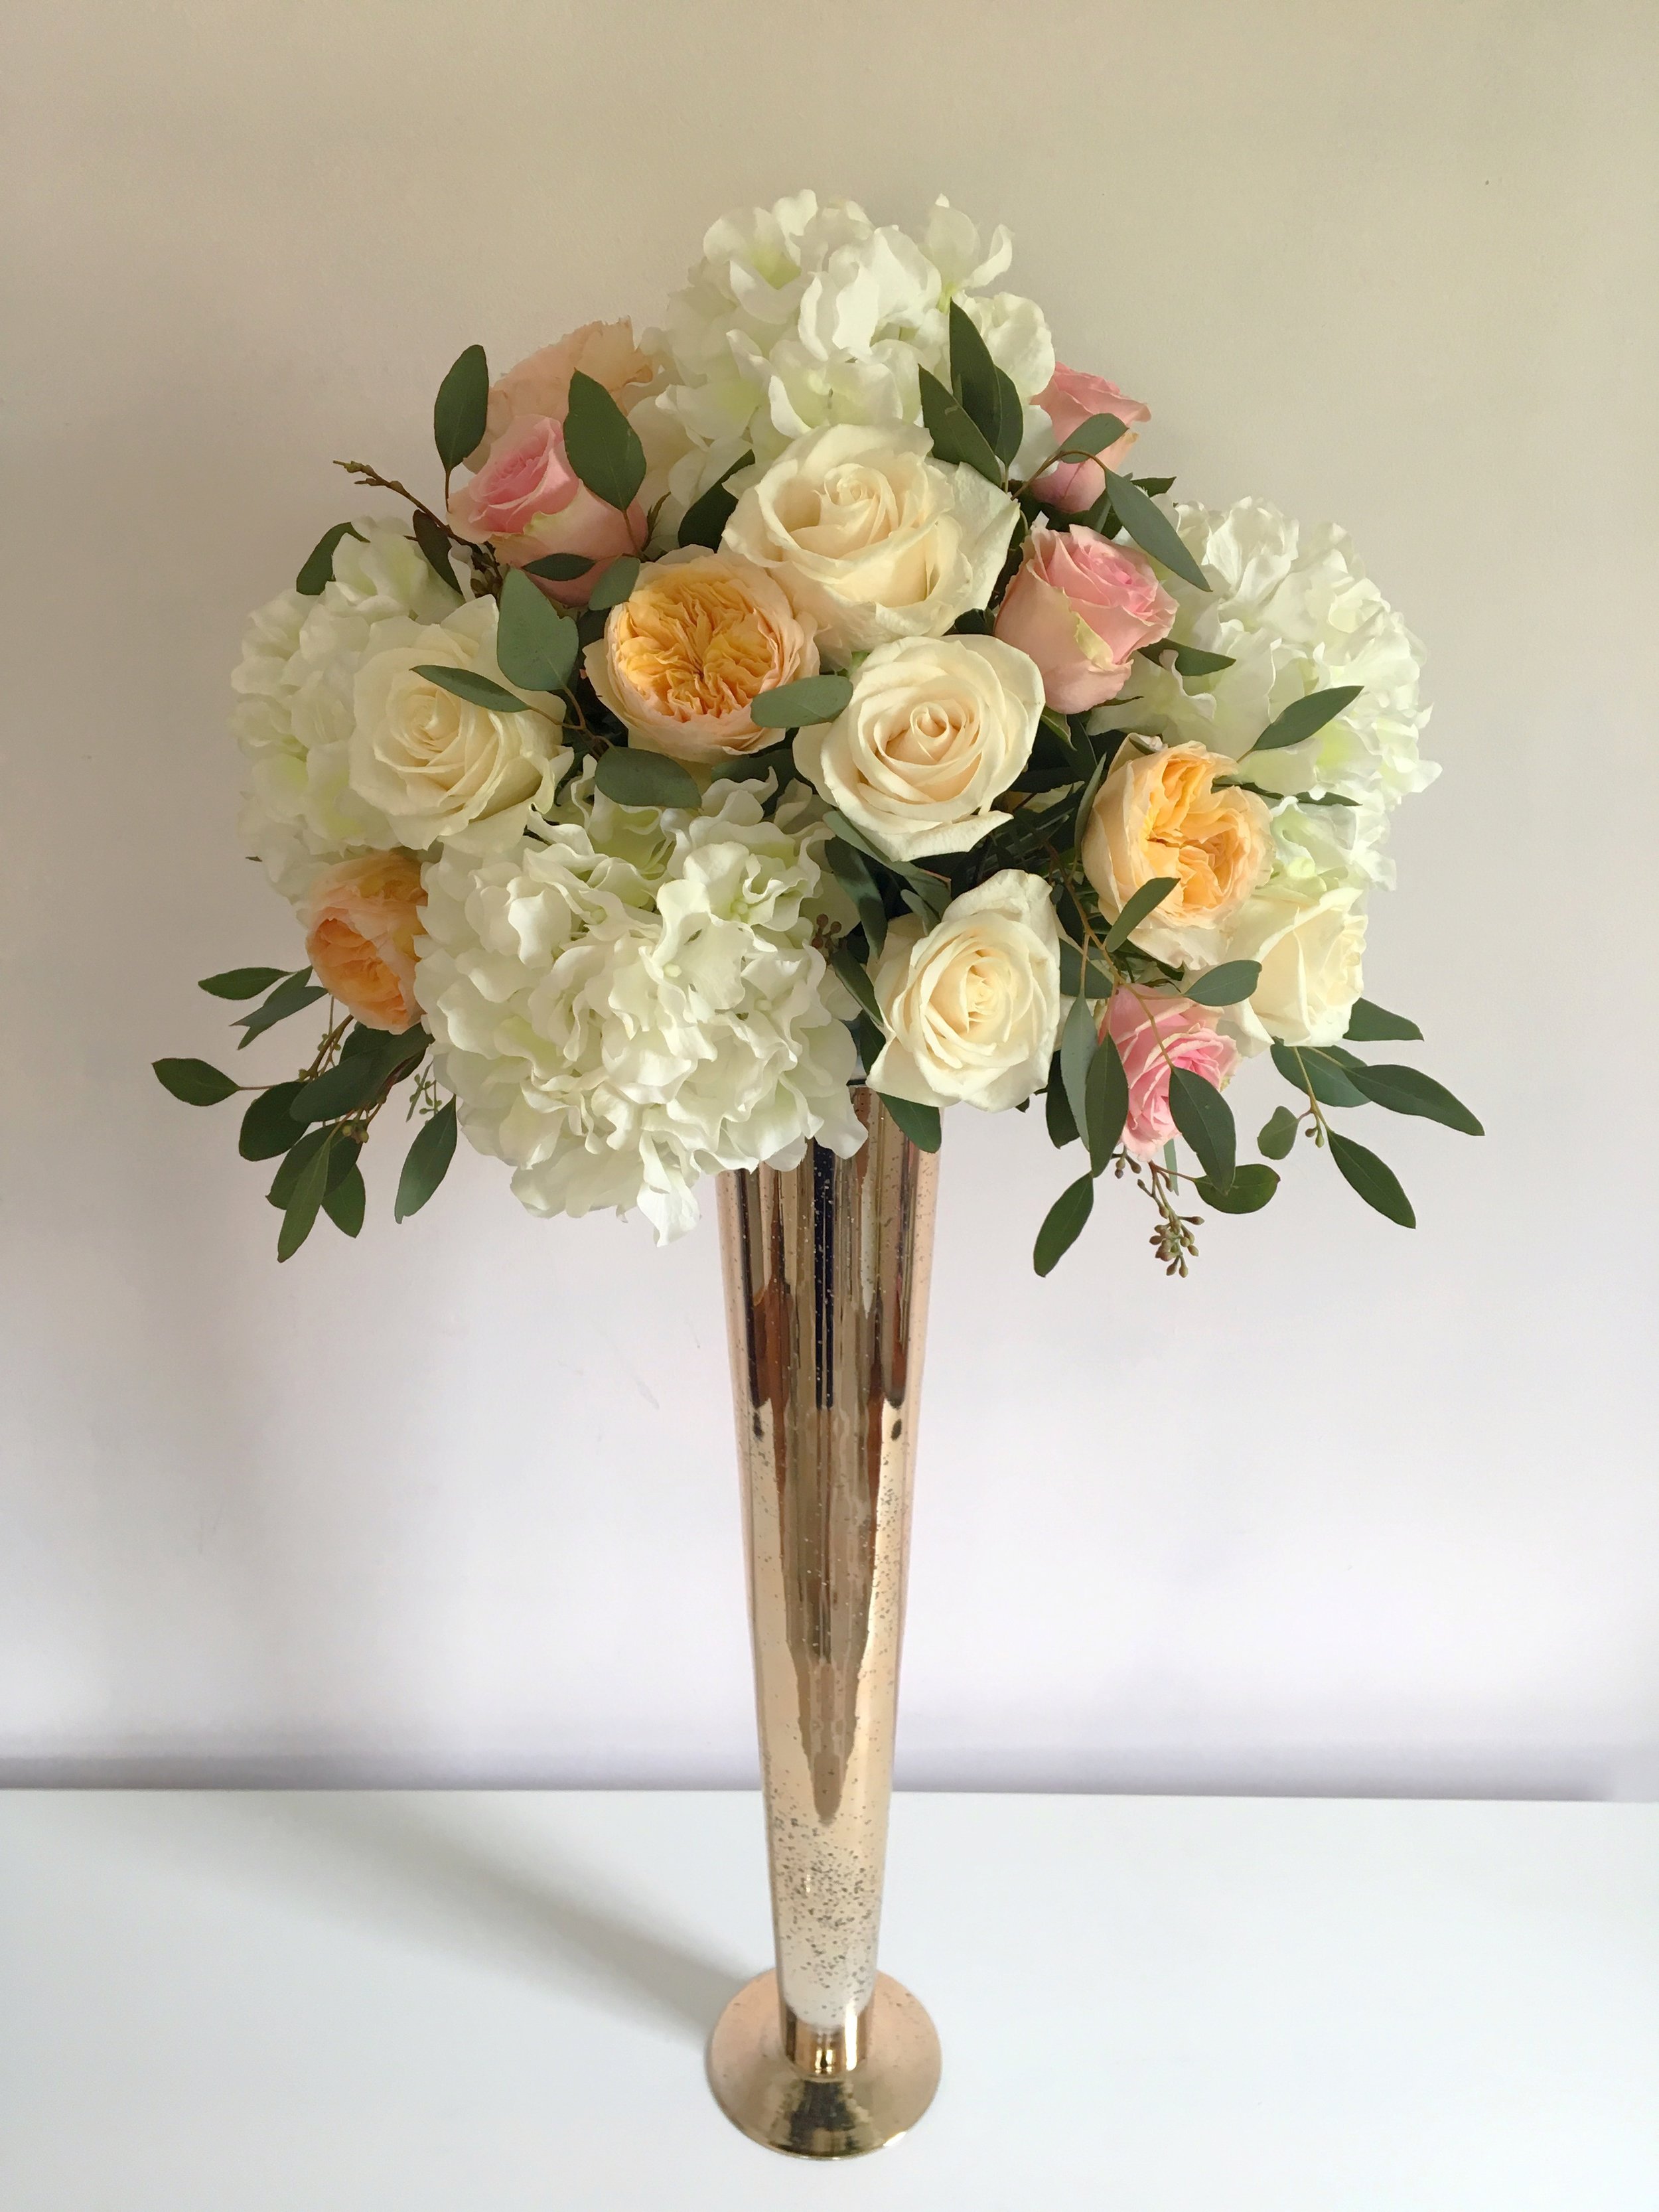 Evelisa Floral & Design: tall vase